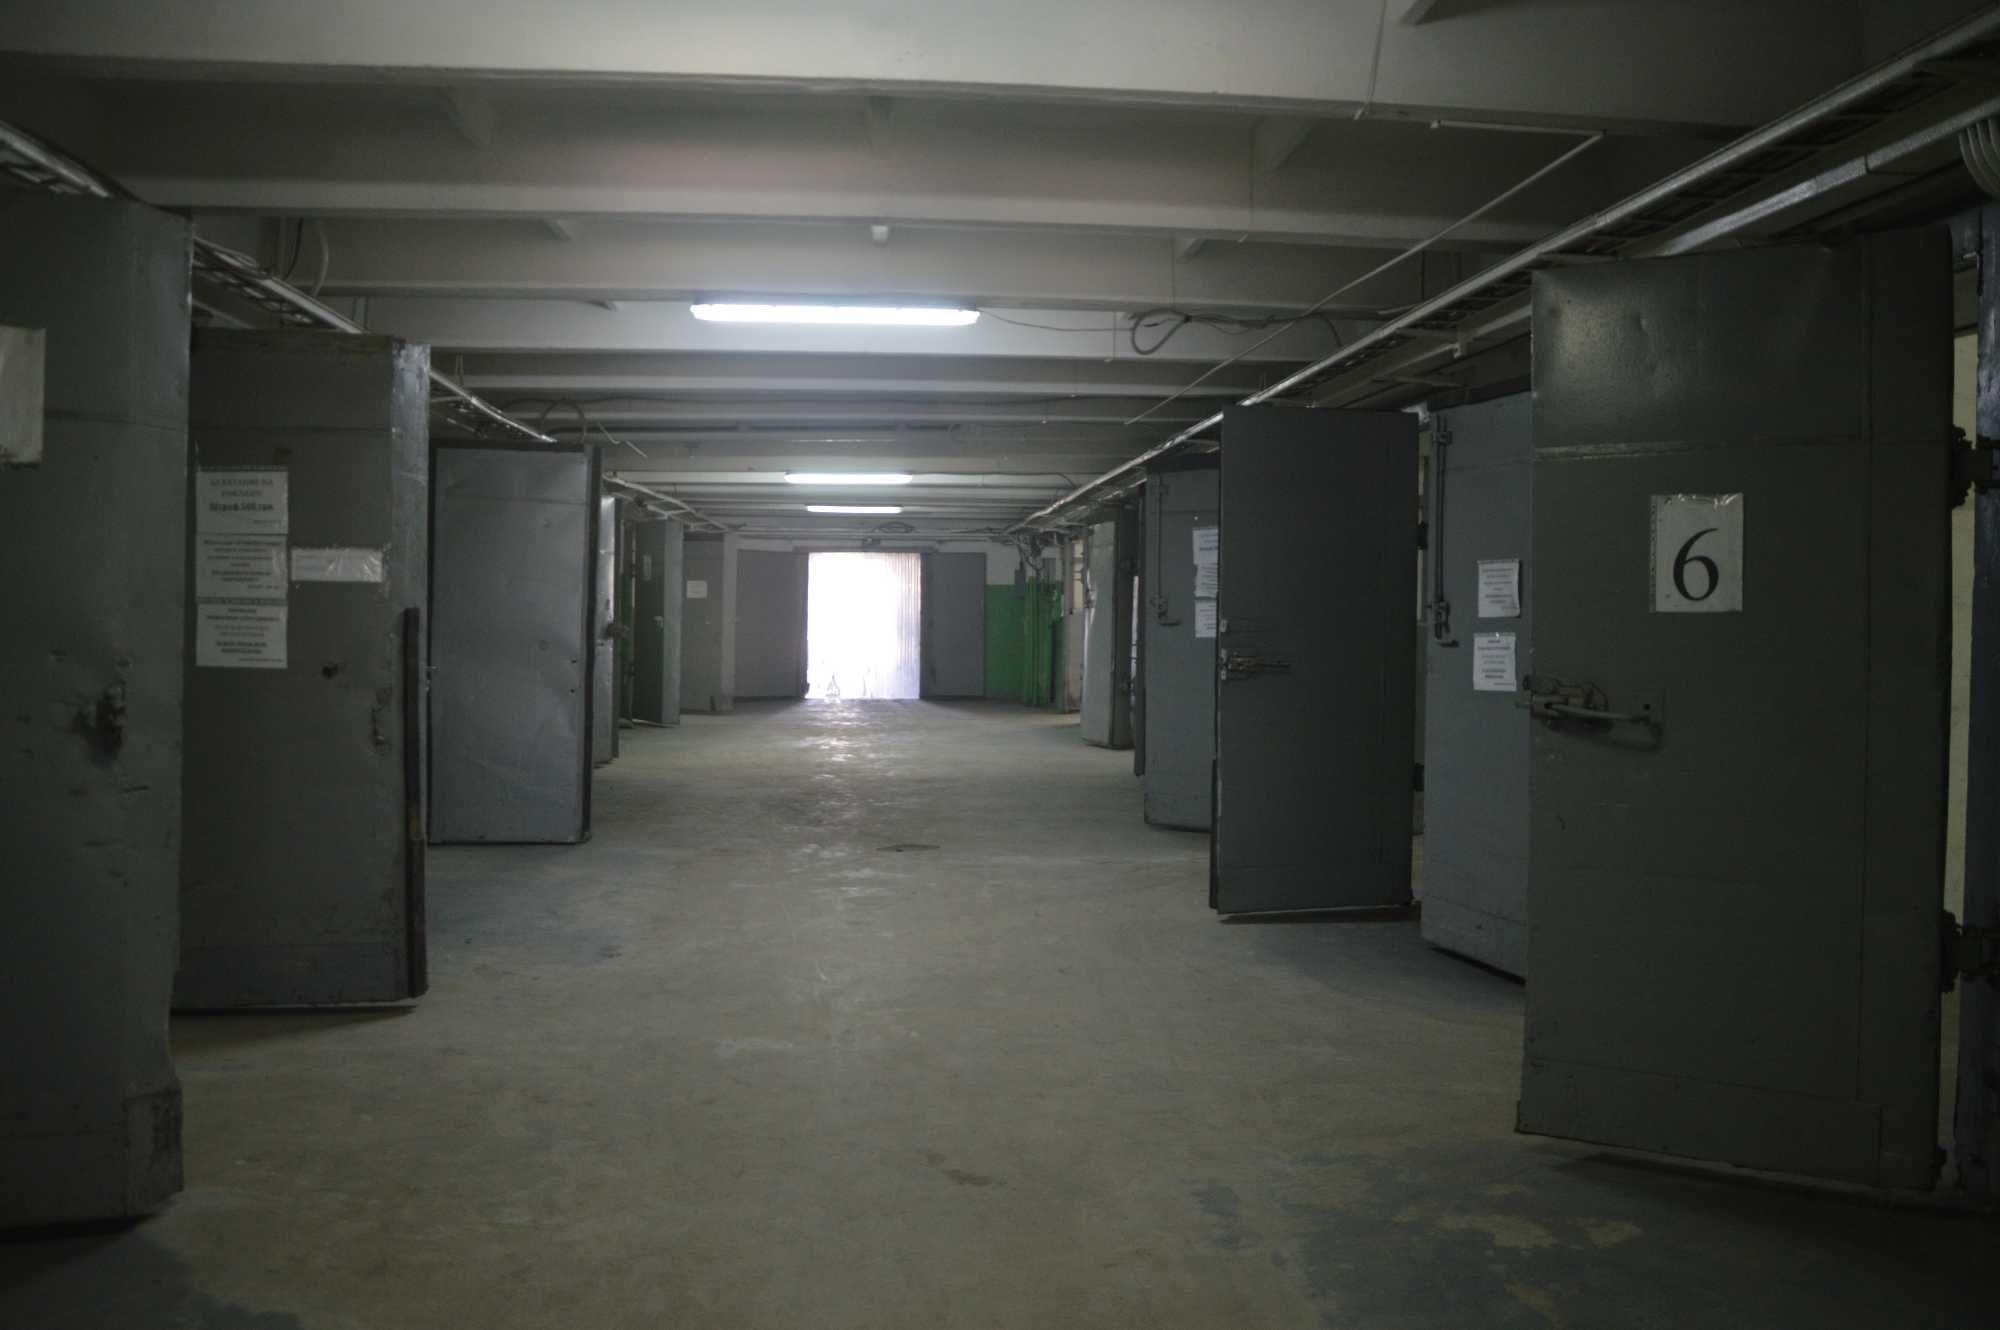 Оренда складського комплексу, Запоріжжя від 2000 до 4000 кв.м. Власник